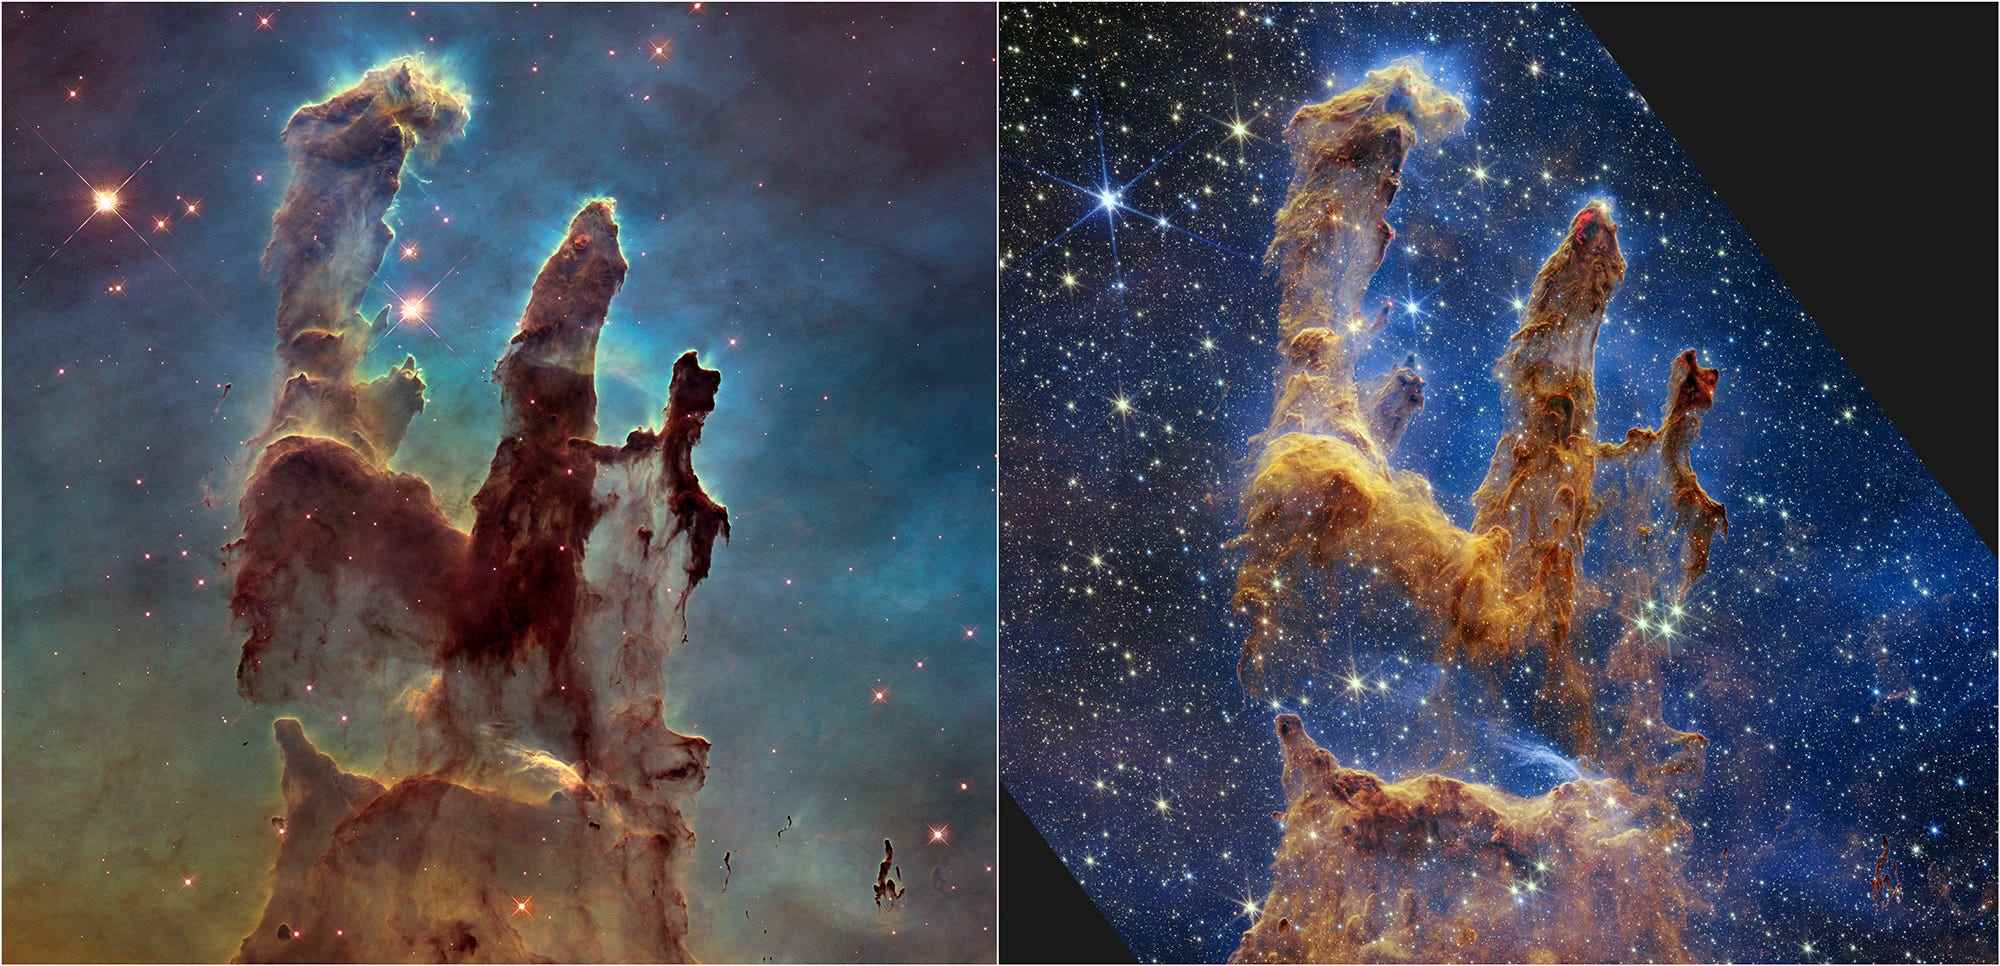 Das Hubble-Weltraumteleskop der NASA machte die Säulen der Schöpfung mit seinem ersten Bild im Jahr 1995 berühmt, besuchte die Szene jedoch 2014 erneut, um eine schärfere, breitere Ansicht im sichtbaren Licht zu zeigen, wie oben links gezeigt.  Eine neue Nahinfrarotlichtansicht des James-Webb-Weltraumteleskops der NASA (rechts) hilft uns, durch mehr Staub in dieser Sternentstehungsregion zu blicken.  Die dicken, staubigen braunen Säulen sind nicht mehr so ​​undurchsichtig und viele weitere rote Sterne, die sich noch bilden, kommen ins Blickfeld.